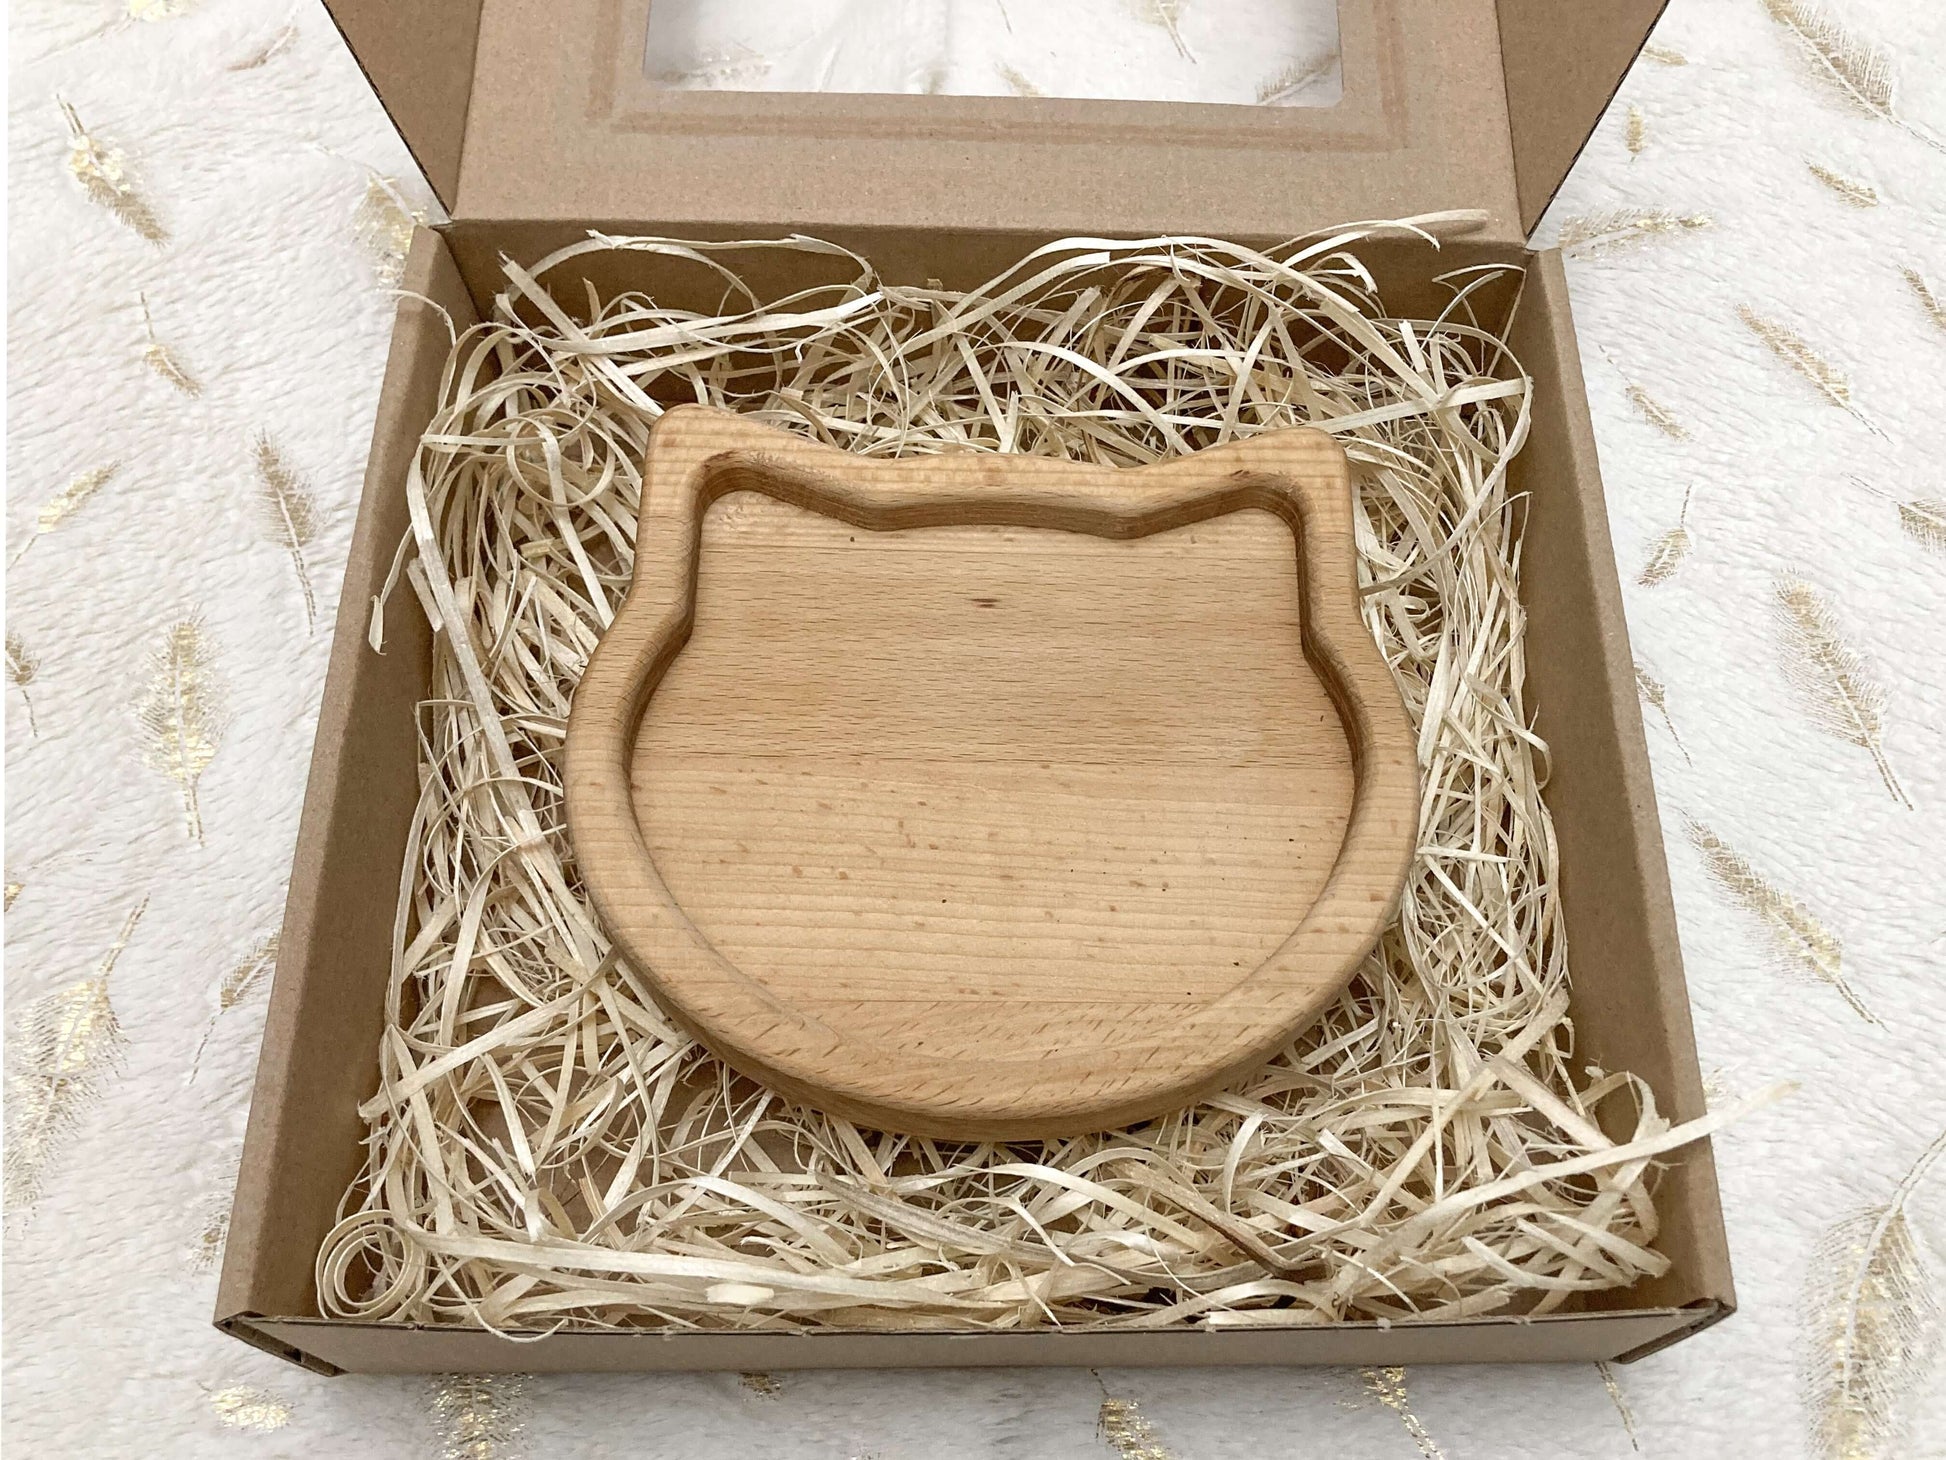 Drevená miska - Mačka z masívneho dreva ošetrená olejom pre bezpečné použitie